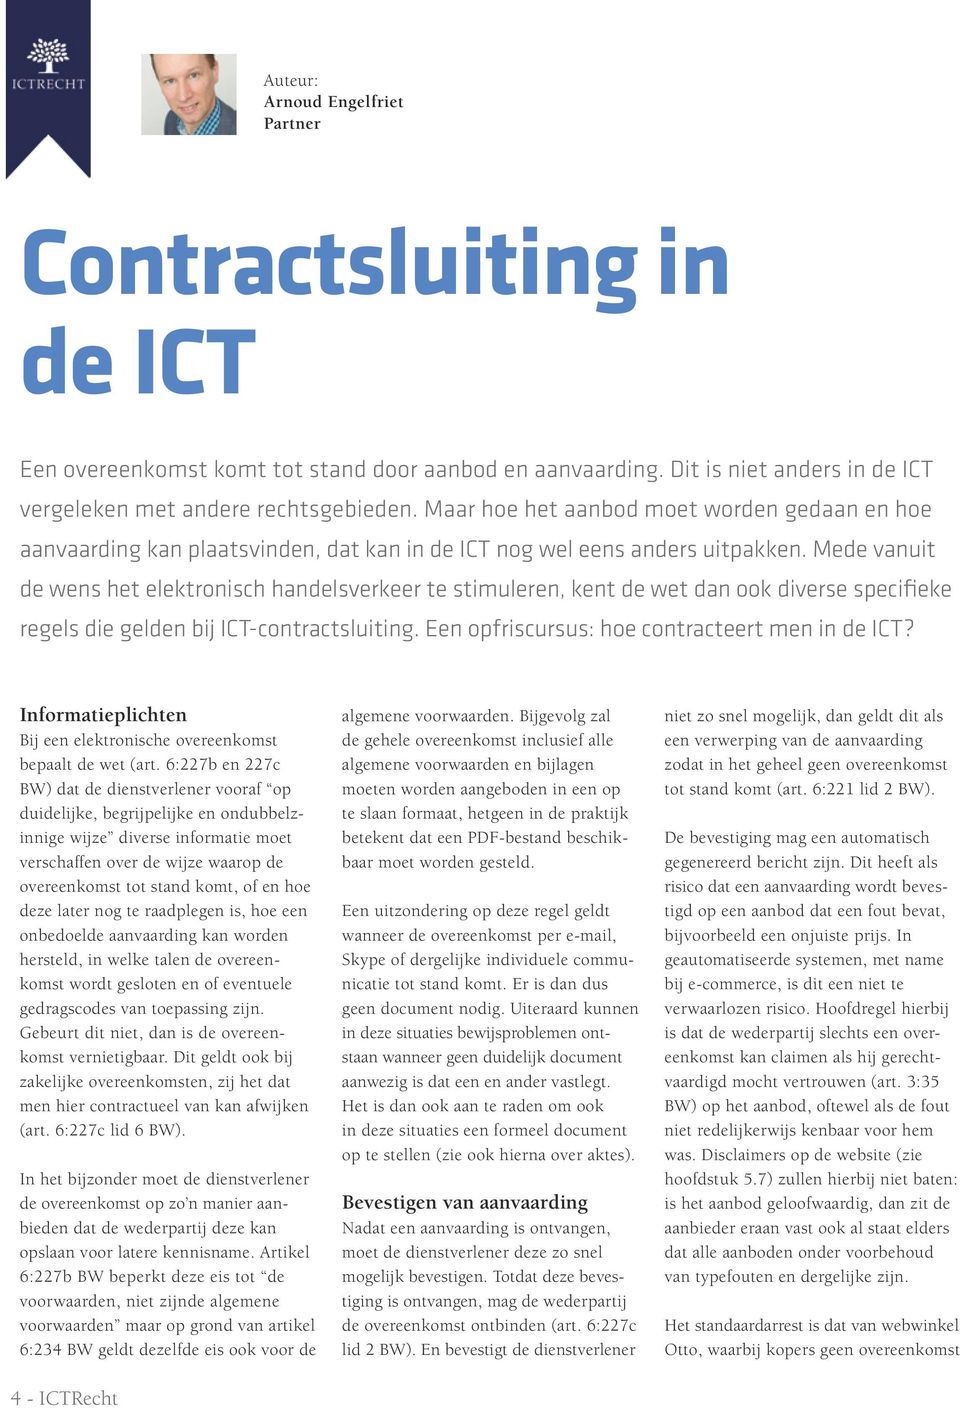 Mede vanuit de wens het elektronisch handelsverkeer te stimuleren, kent de wet dan ook diverse specifieke regels die gelden bij ICT-contractsluiting. Een opfriscursus: hoe contracteert men in de ICT?